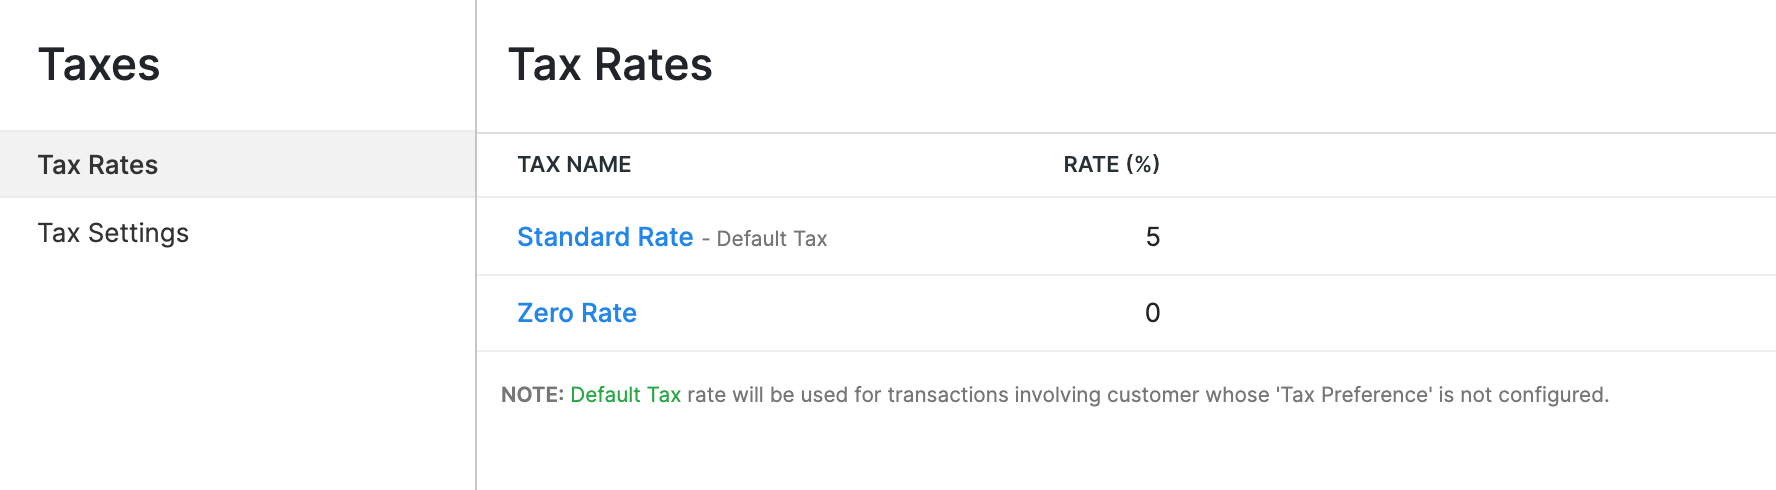 "Tax rates in Oman VAT"